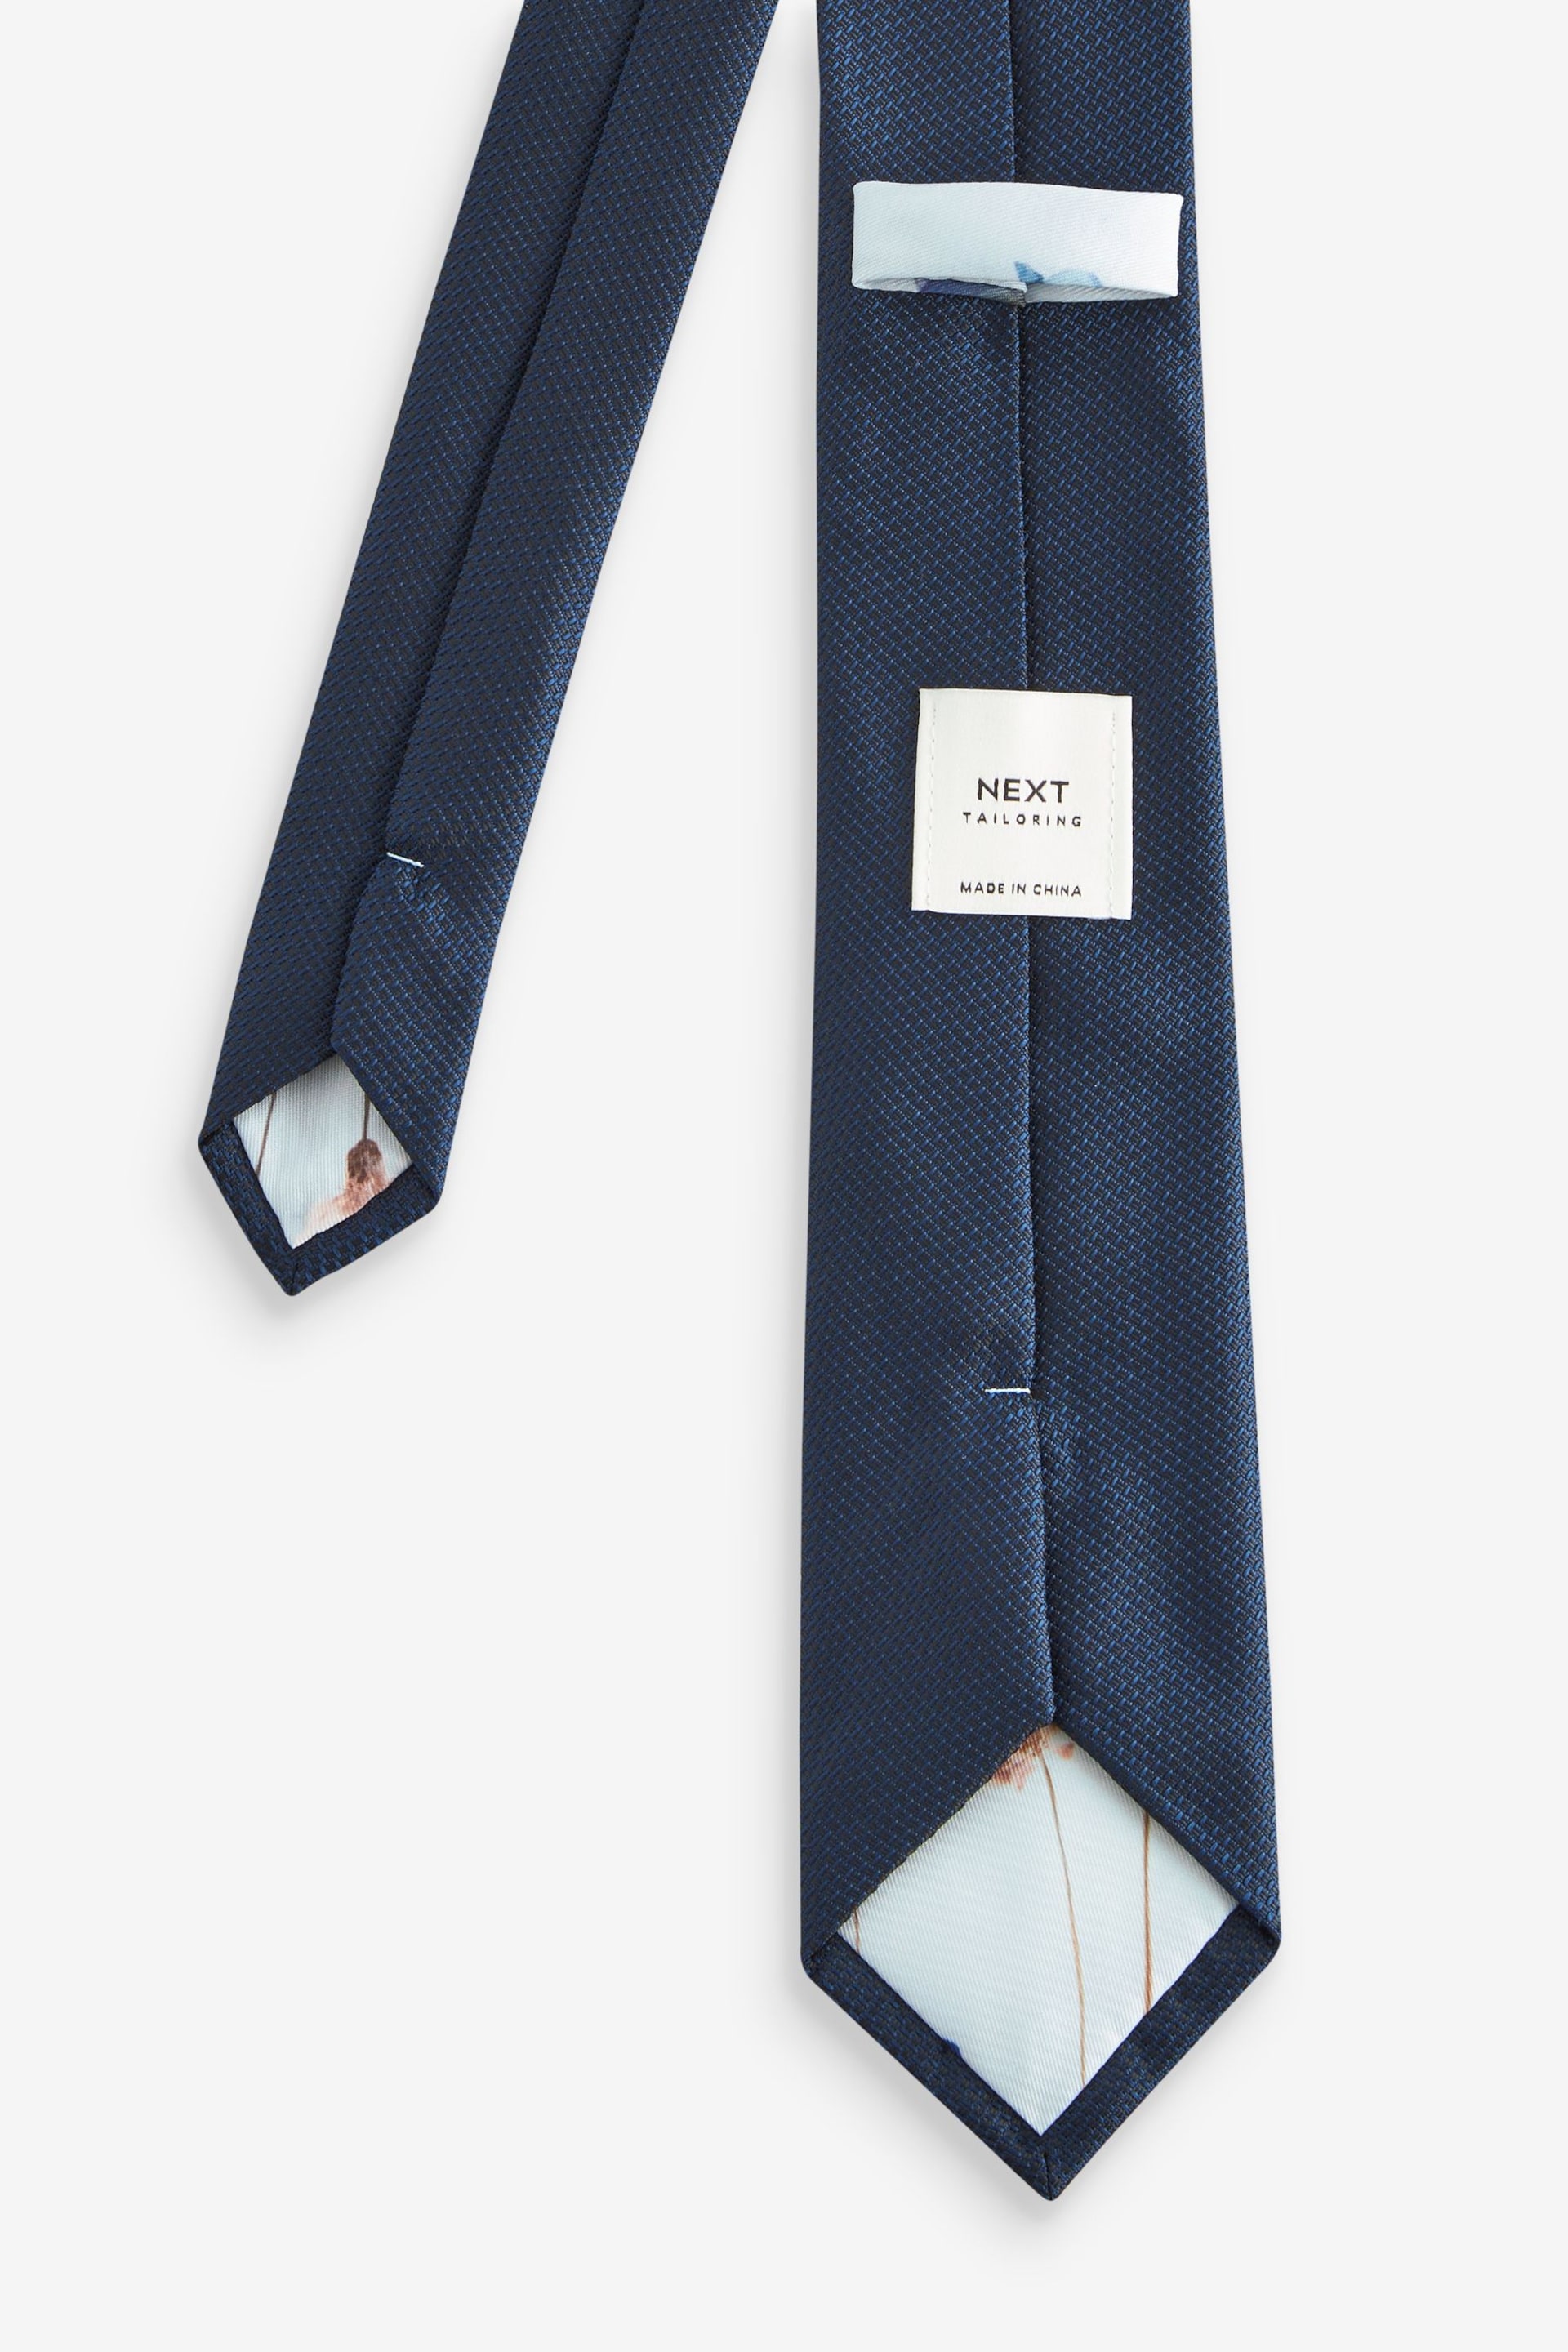 Navy Blue/Light Blue Pressed Flower Slim Tie And Pocket Square Set - Image 3 of 5